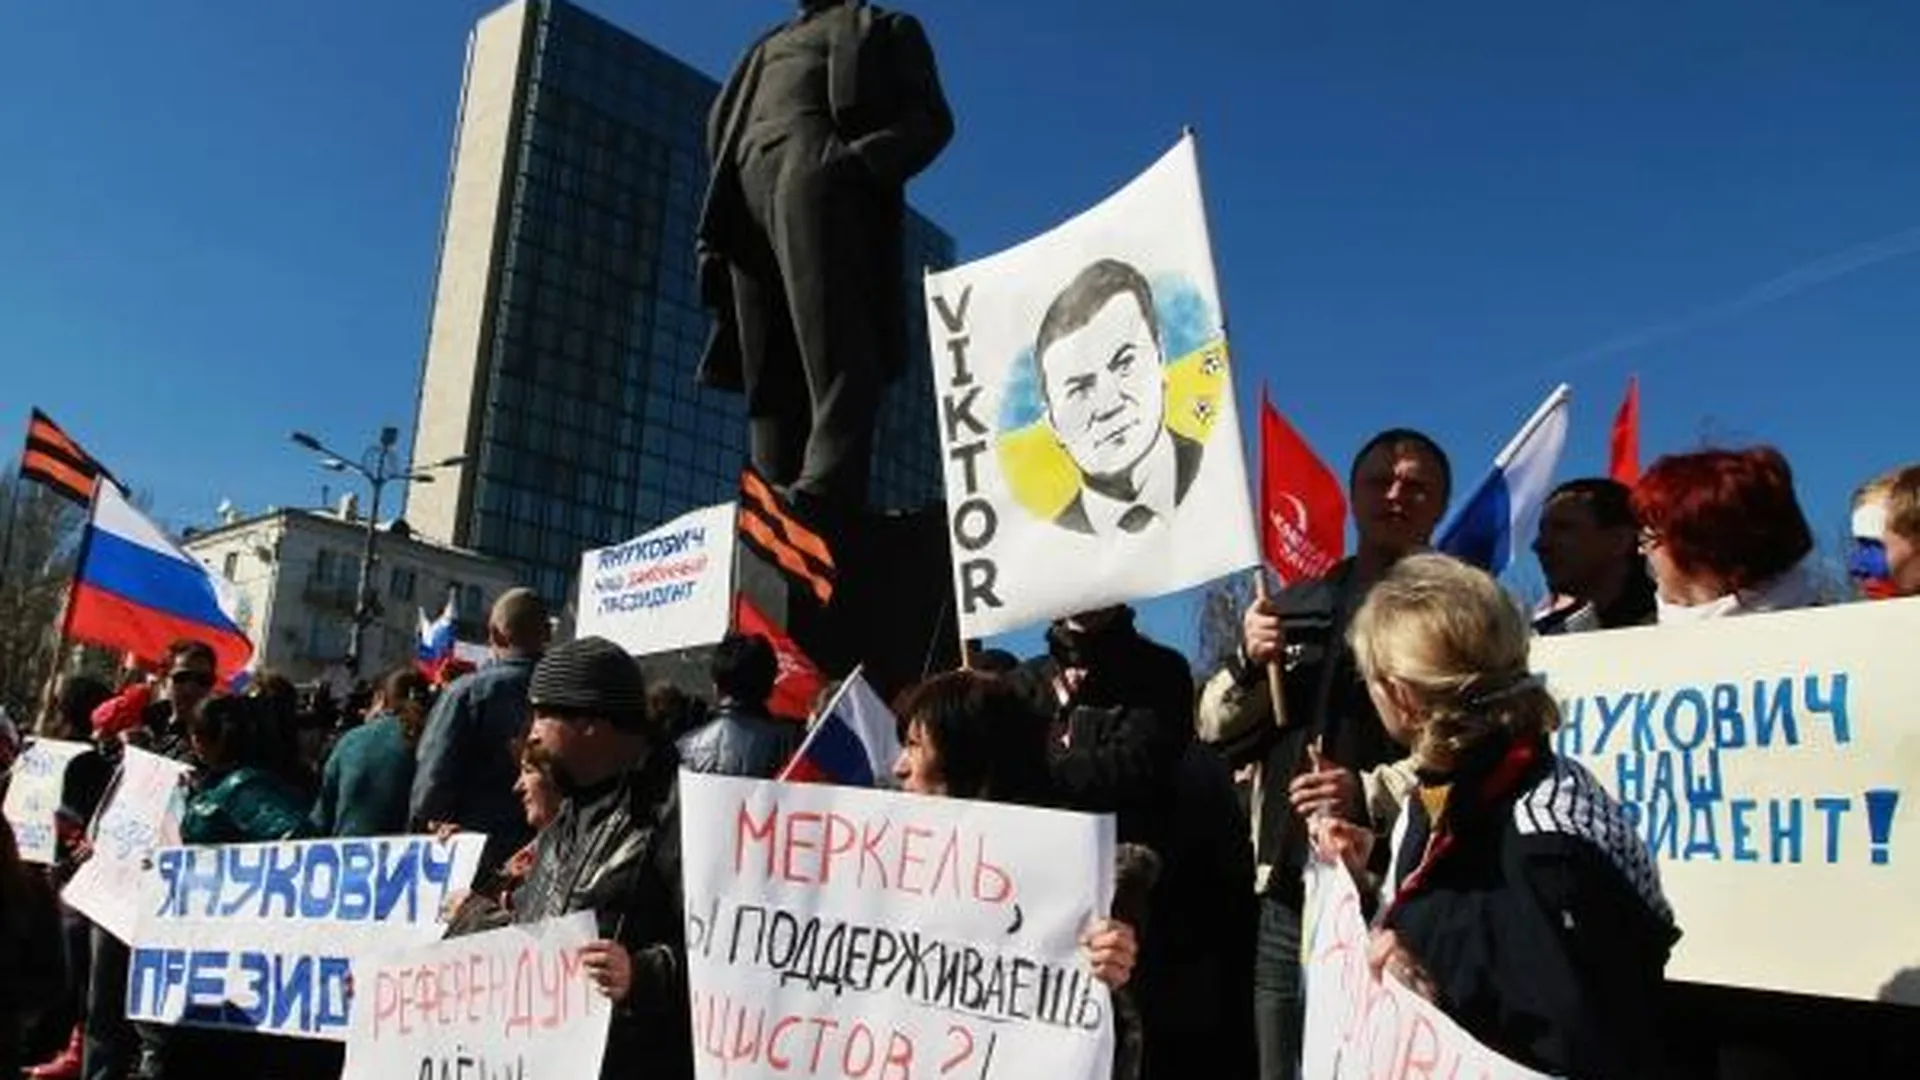 Участники митинга в поддержку Виктора Януковича у здания Донецкого областного совета, 2014 год